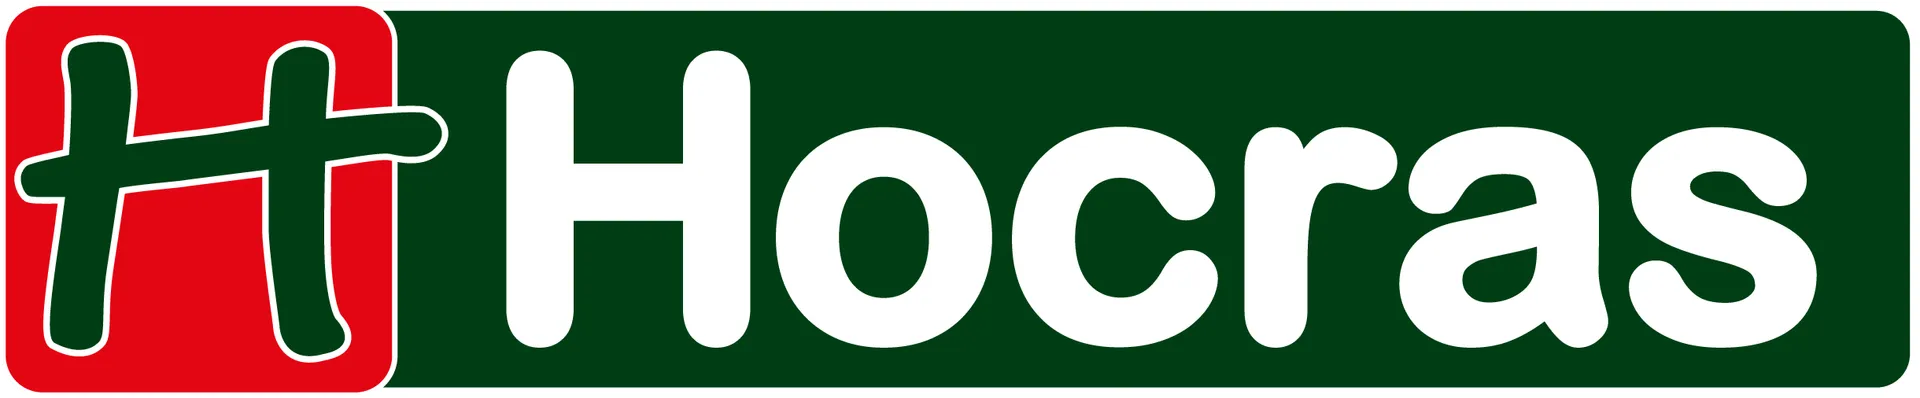 HOCRAS logo